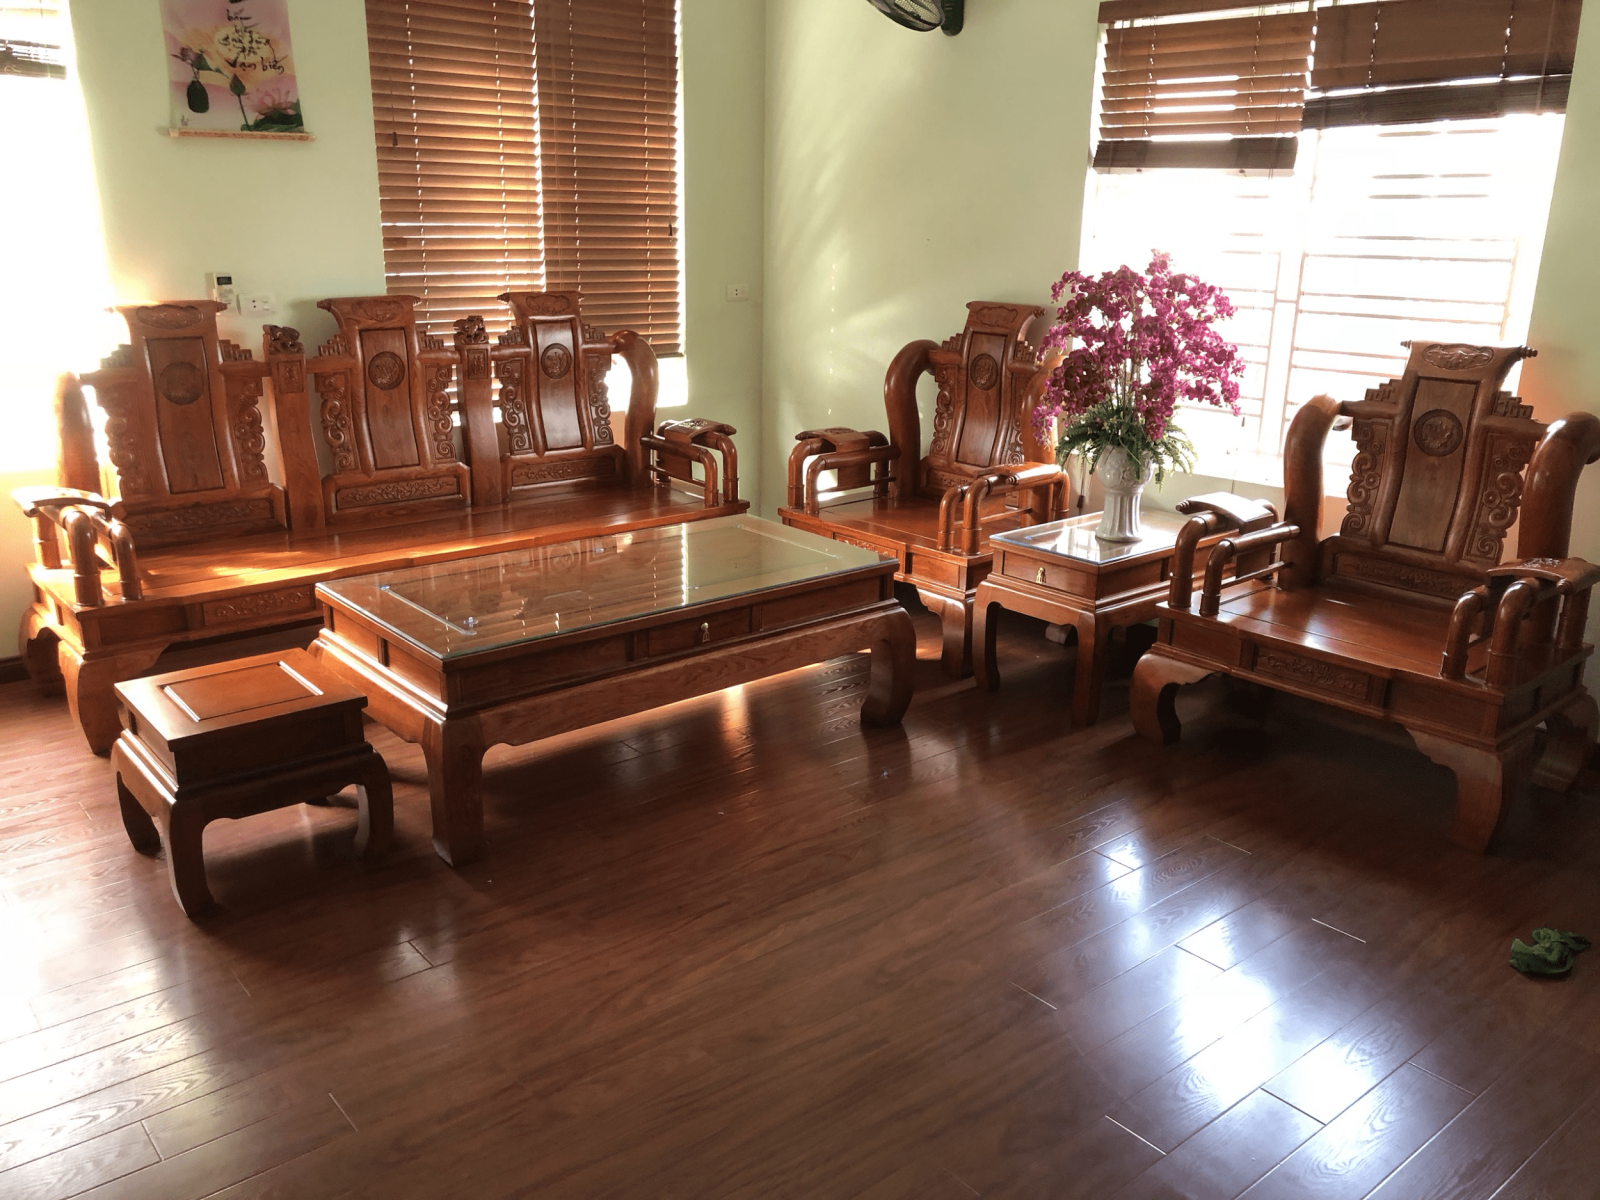 Với tông màu ấm áp của gỗ hương, bộ bàn ghế phòng khách gỗ hương mang lại không gian sống của bạn sự tinh tế và cổ điển. Với kiểu dáng hiện đại hợp với phong cách trang trí hiện đại, bộ ghế gỗ hương sẽ là điểm nhấn hoàn hảo cho không gian sống của bạn.